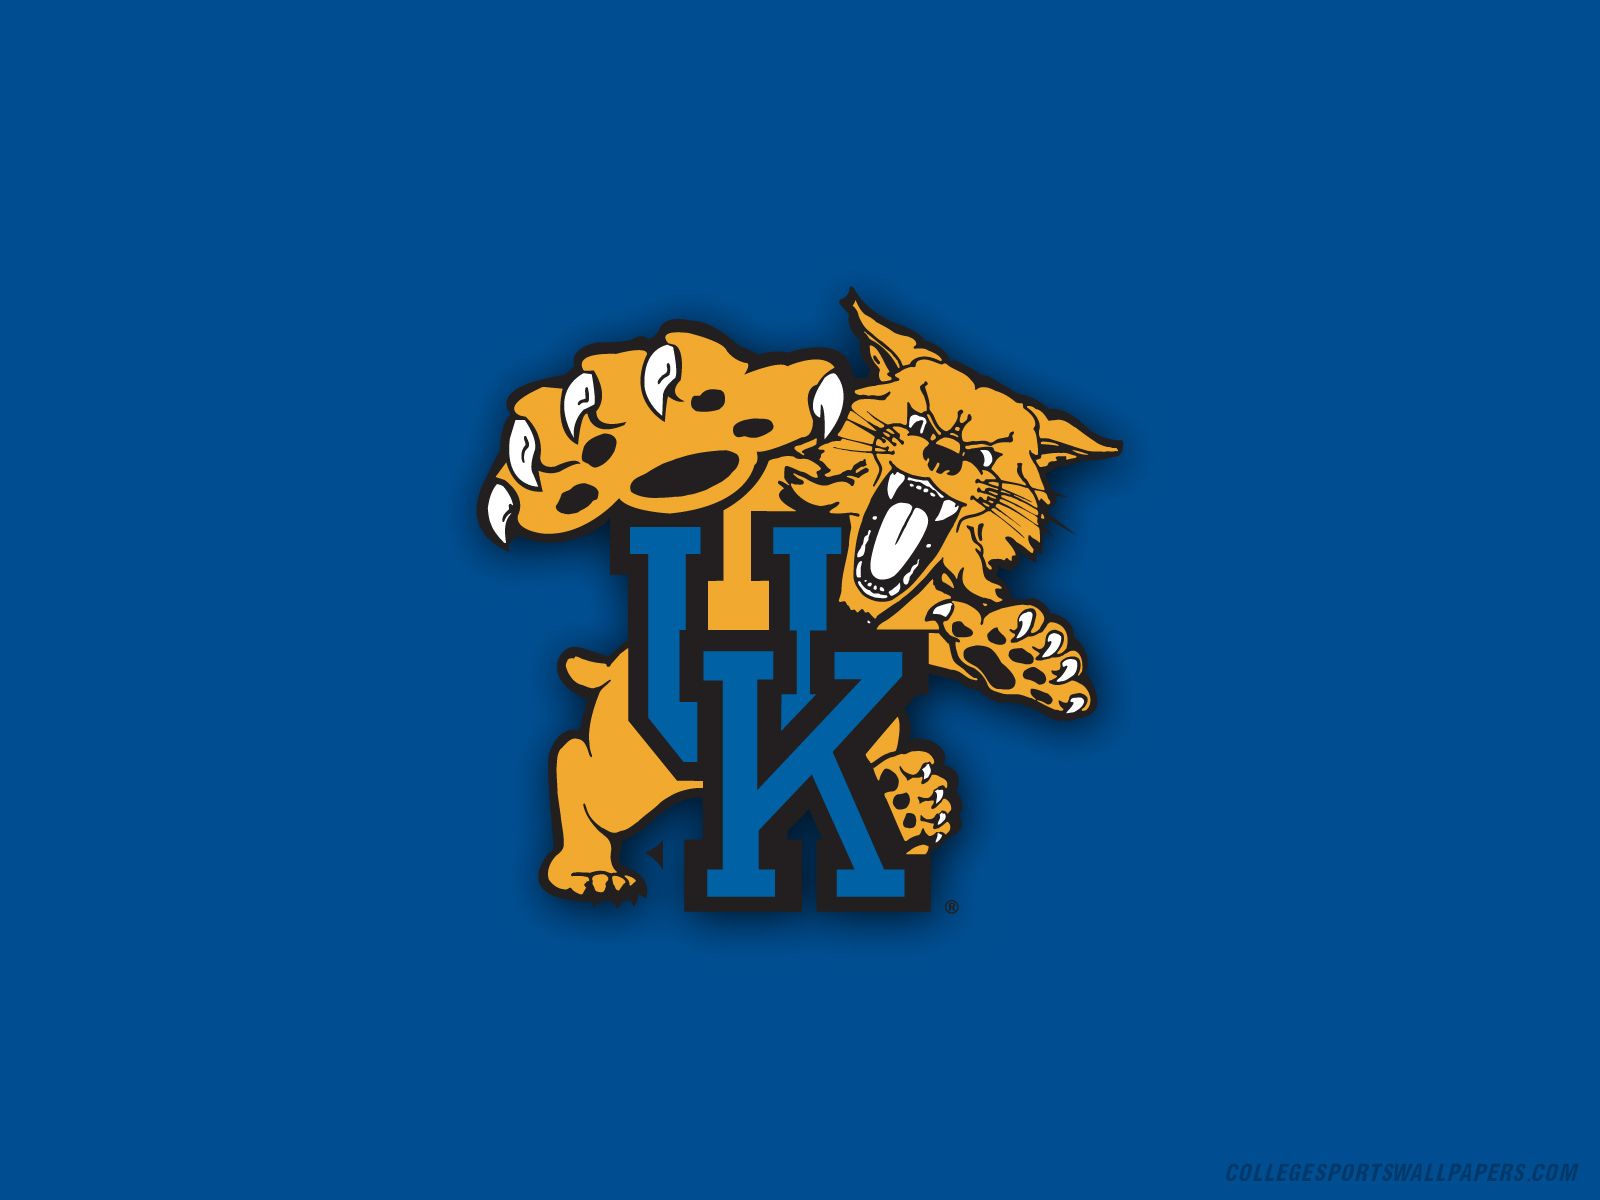 Uk logo - Kentucky Wildcats Wallpaper 9587260 - Fanpop